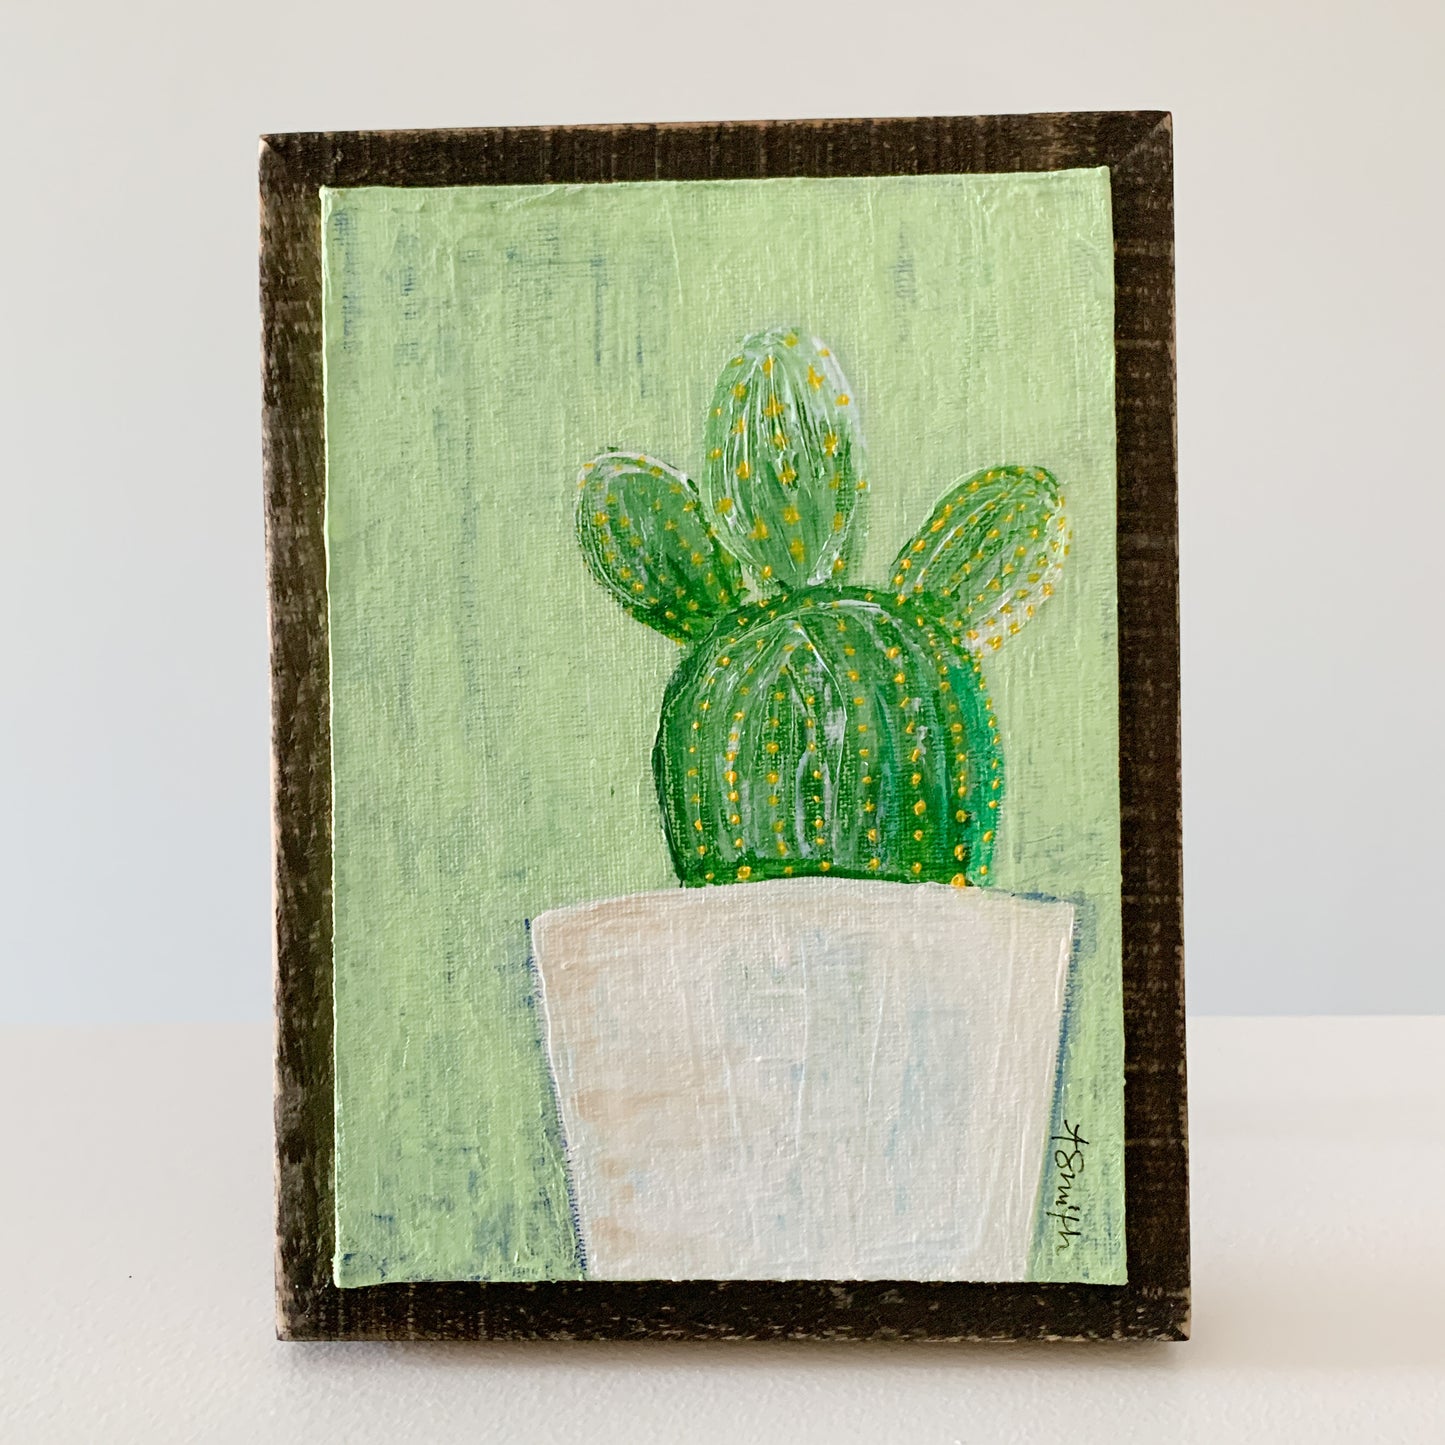 Cactus Duo Acrylic Paintings, 5x7"